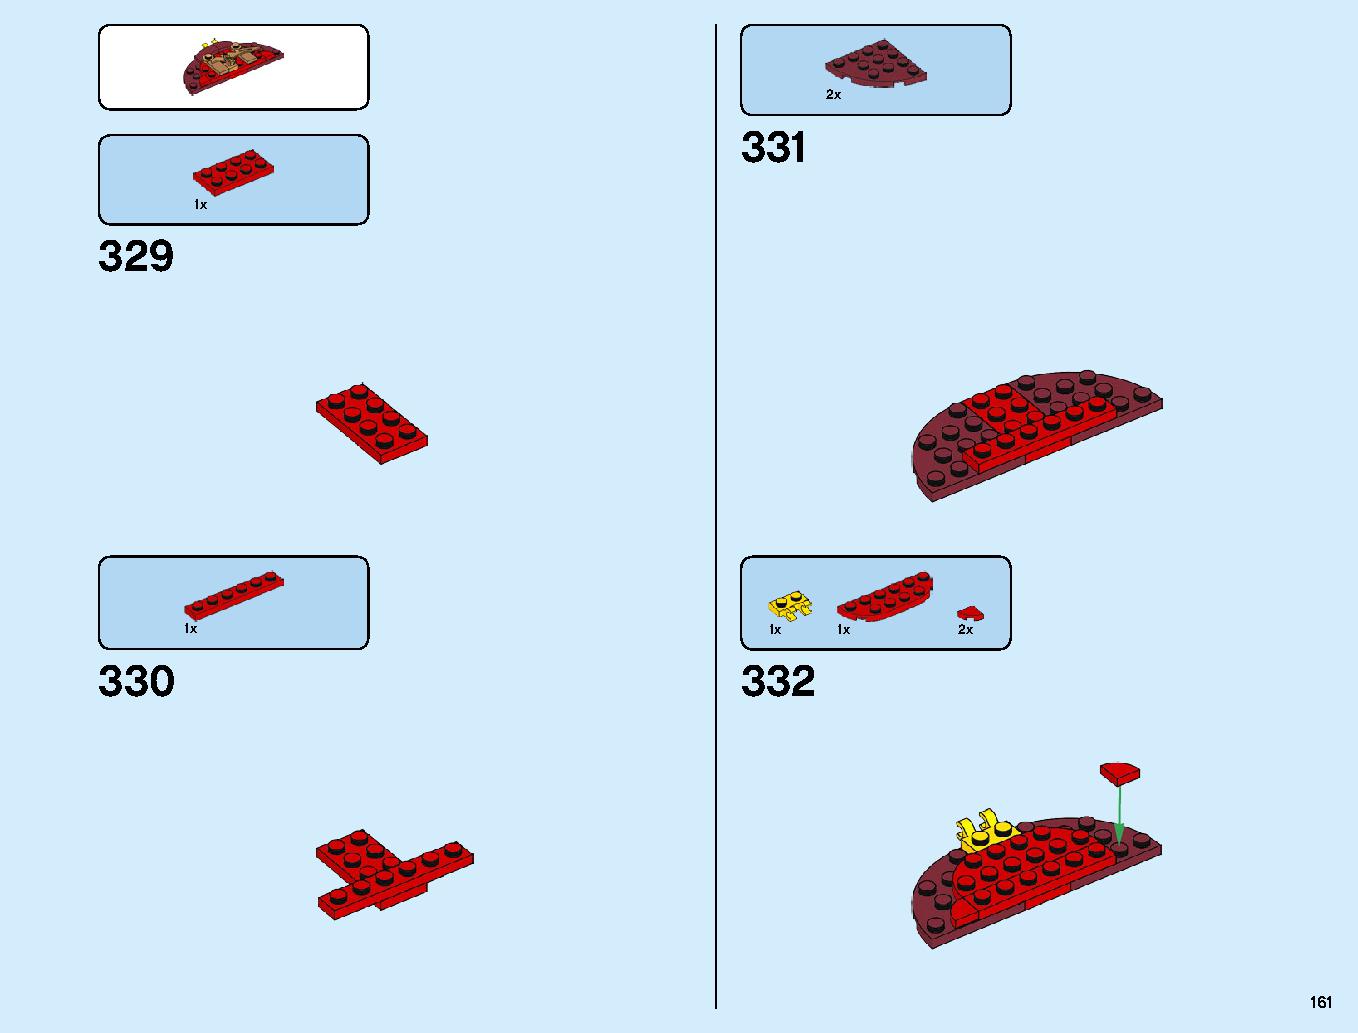 ニンジャ道場 70670 レゴの商品情報 レゴの説明書・組立方法 161 page